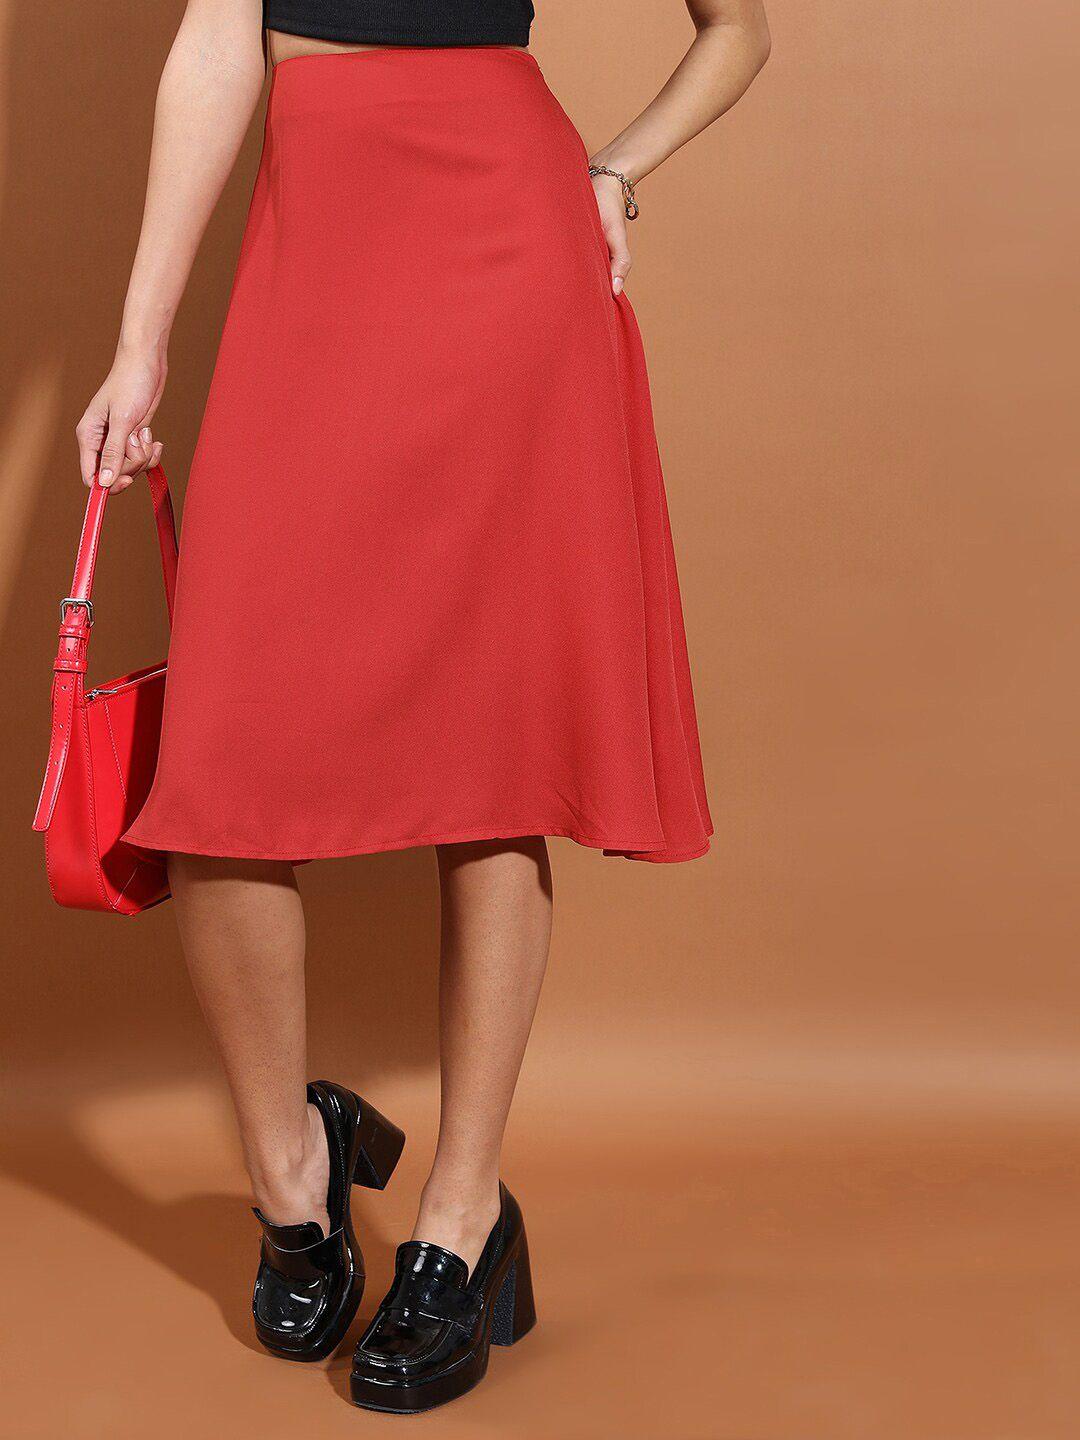 tokyo talkies red a-line zipper detail knee-length skirt